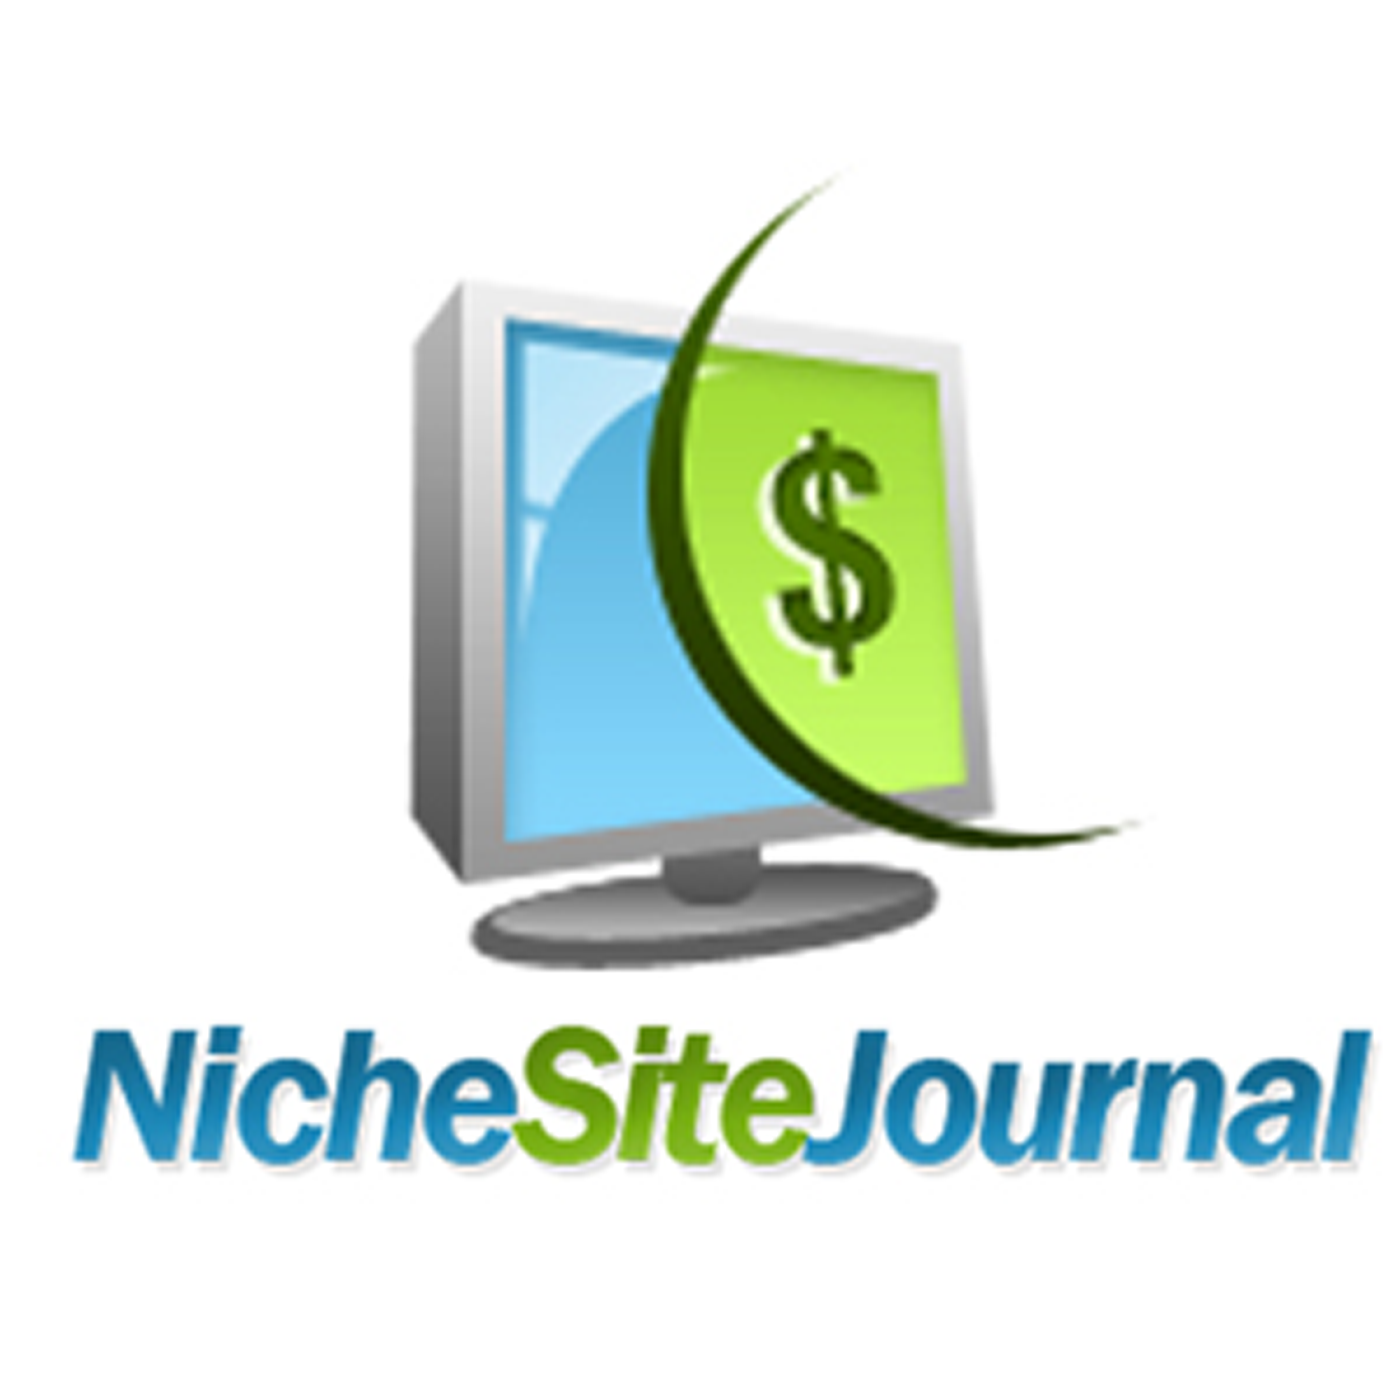 Niche Site Journal